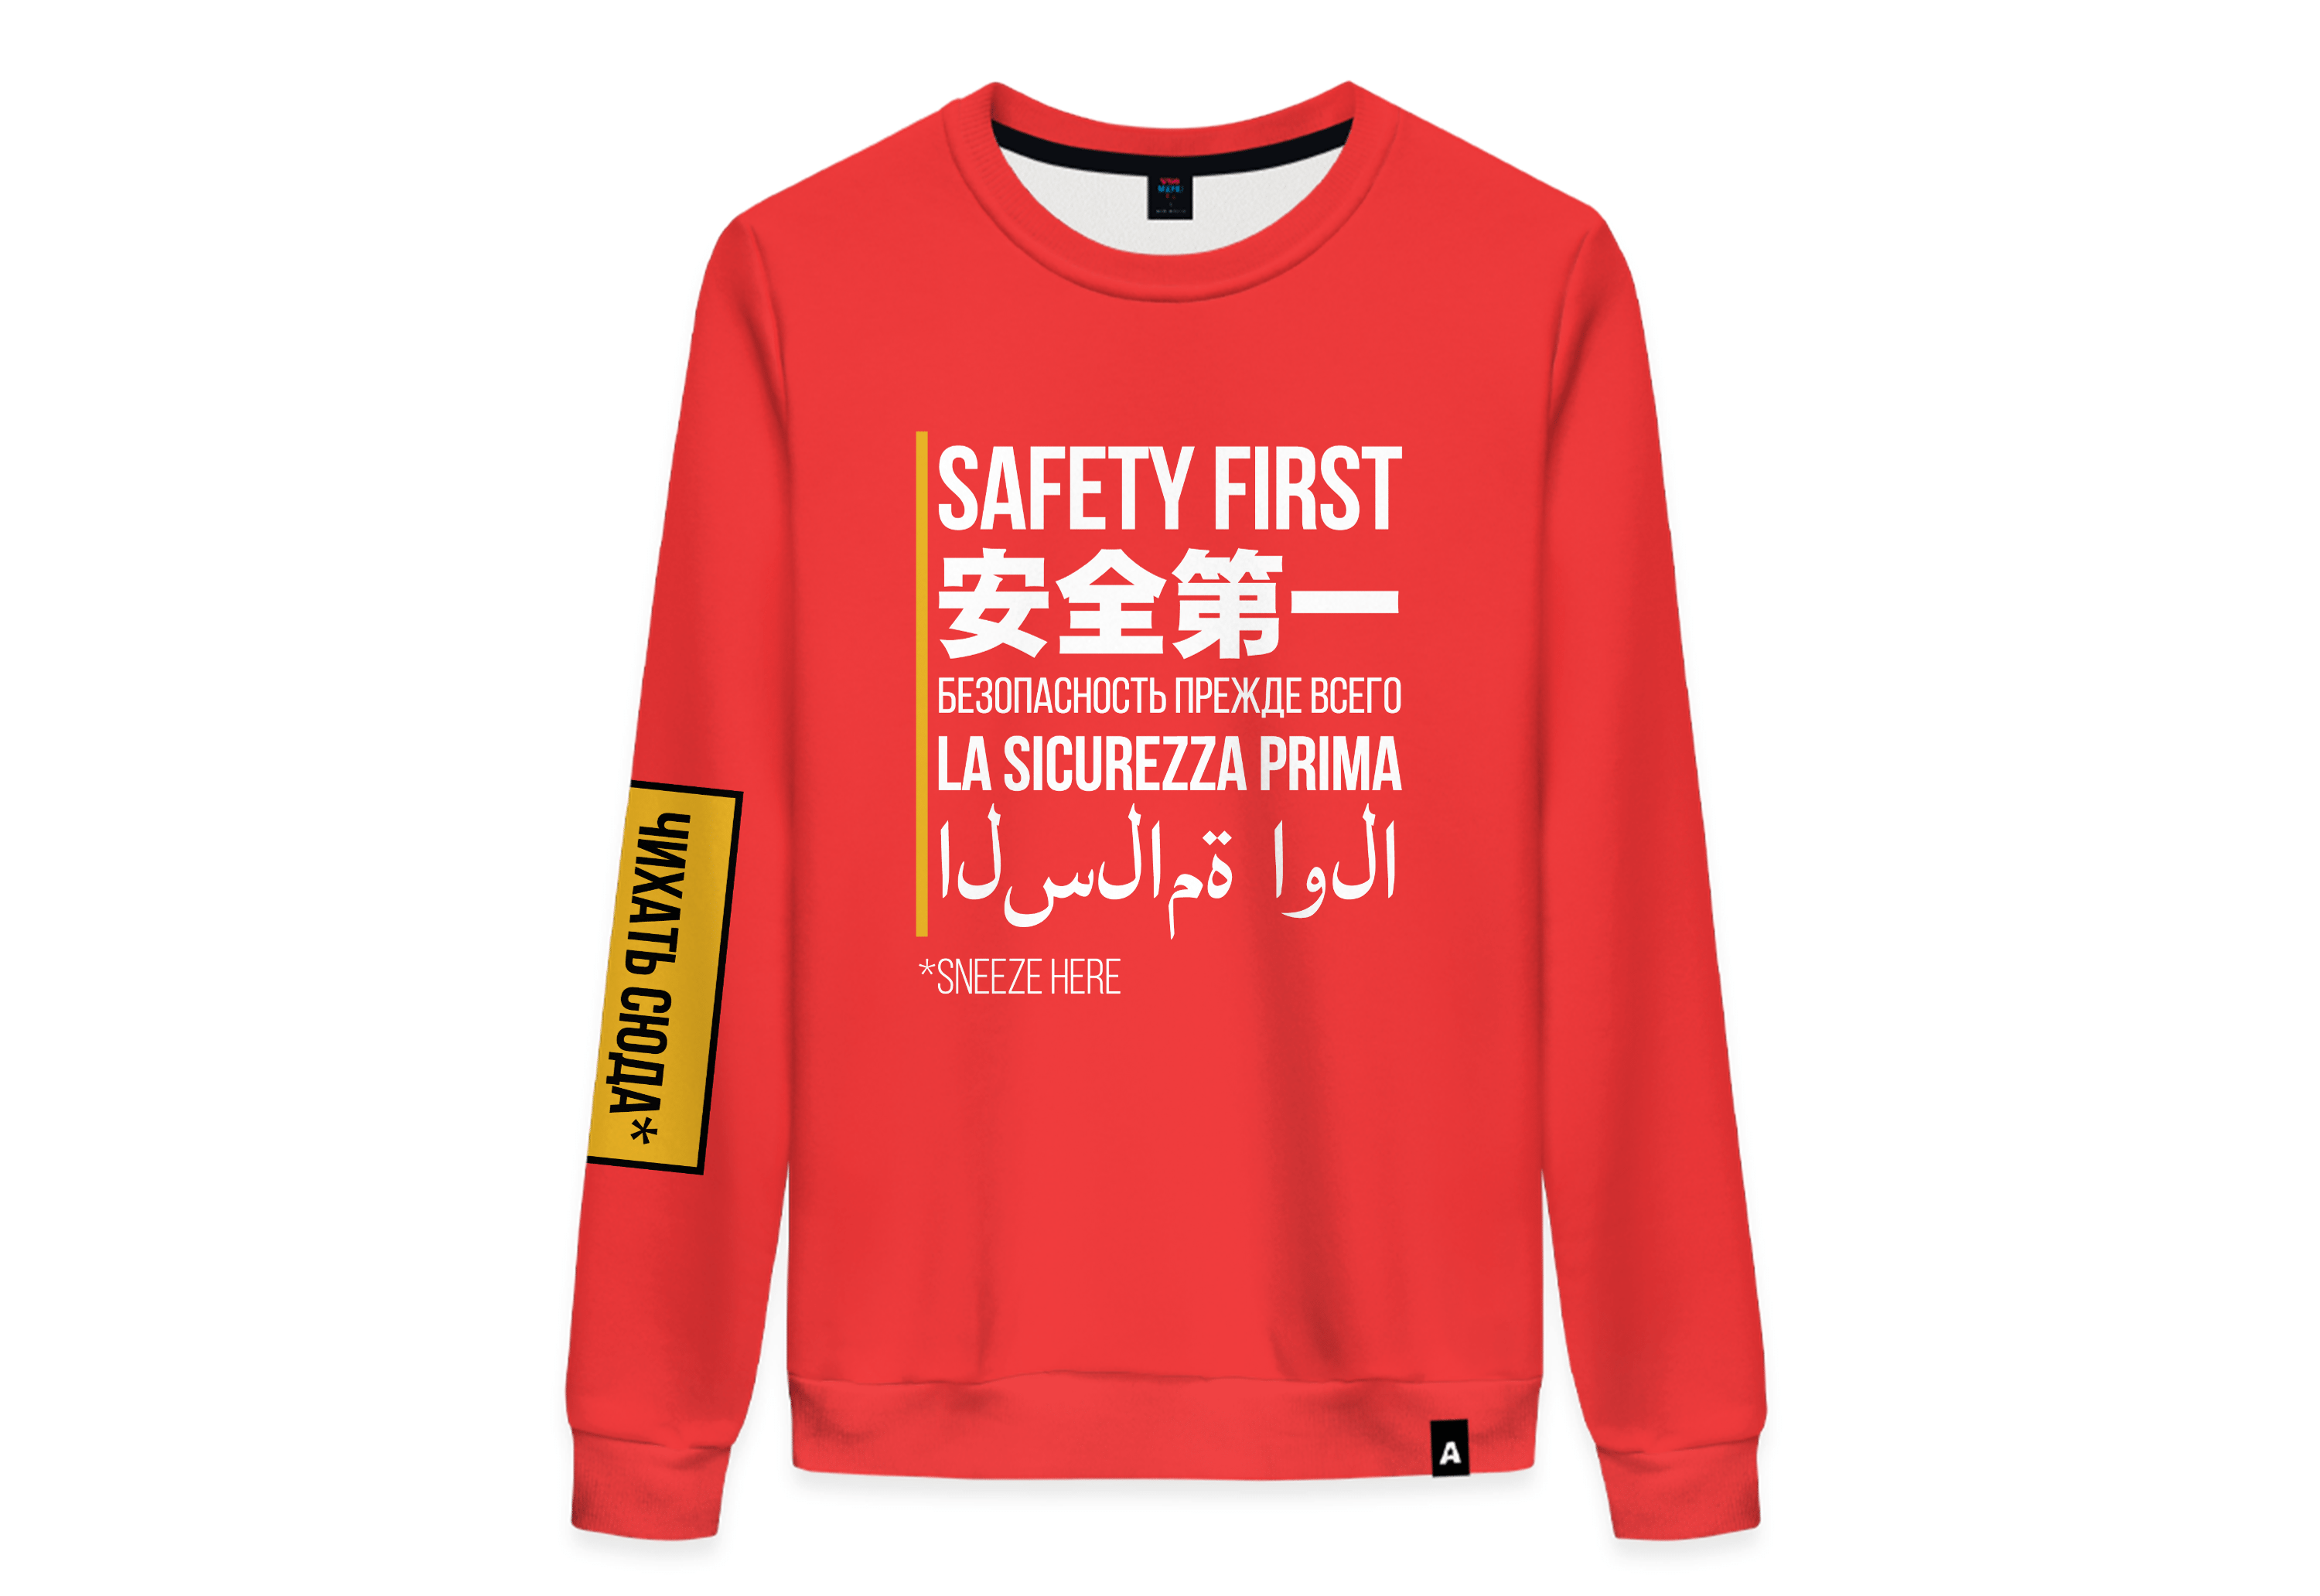 Надпись Safety first создана для того, чтобы объединить людей из разных стран, говорящих на разных языках